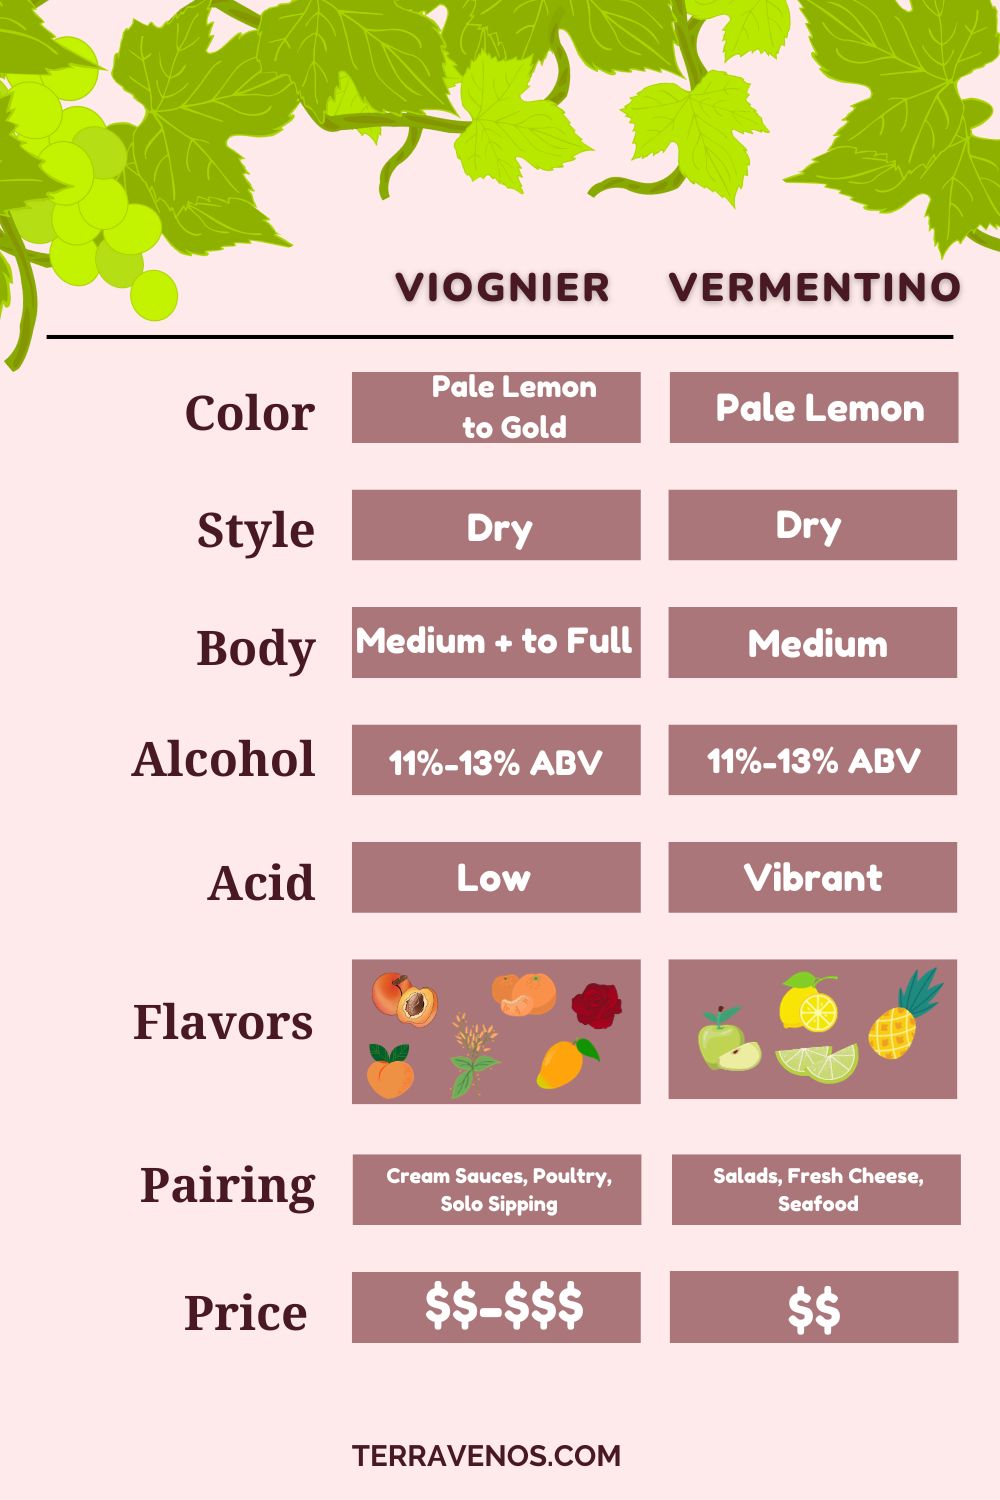 viognier vs vermentino wine comparison infographic